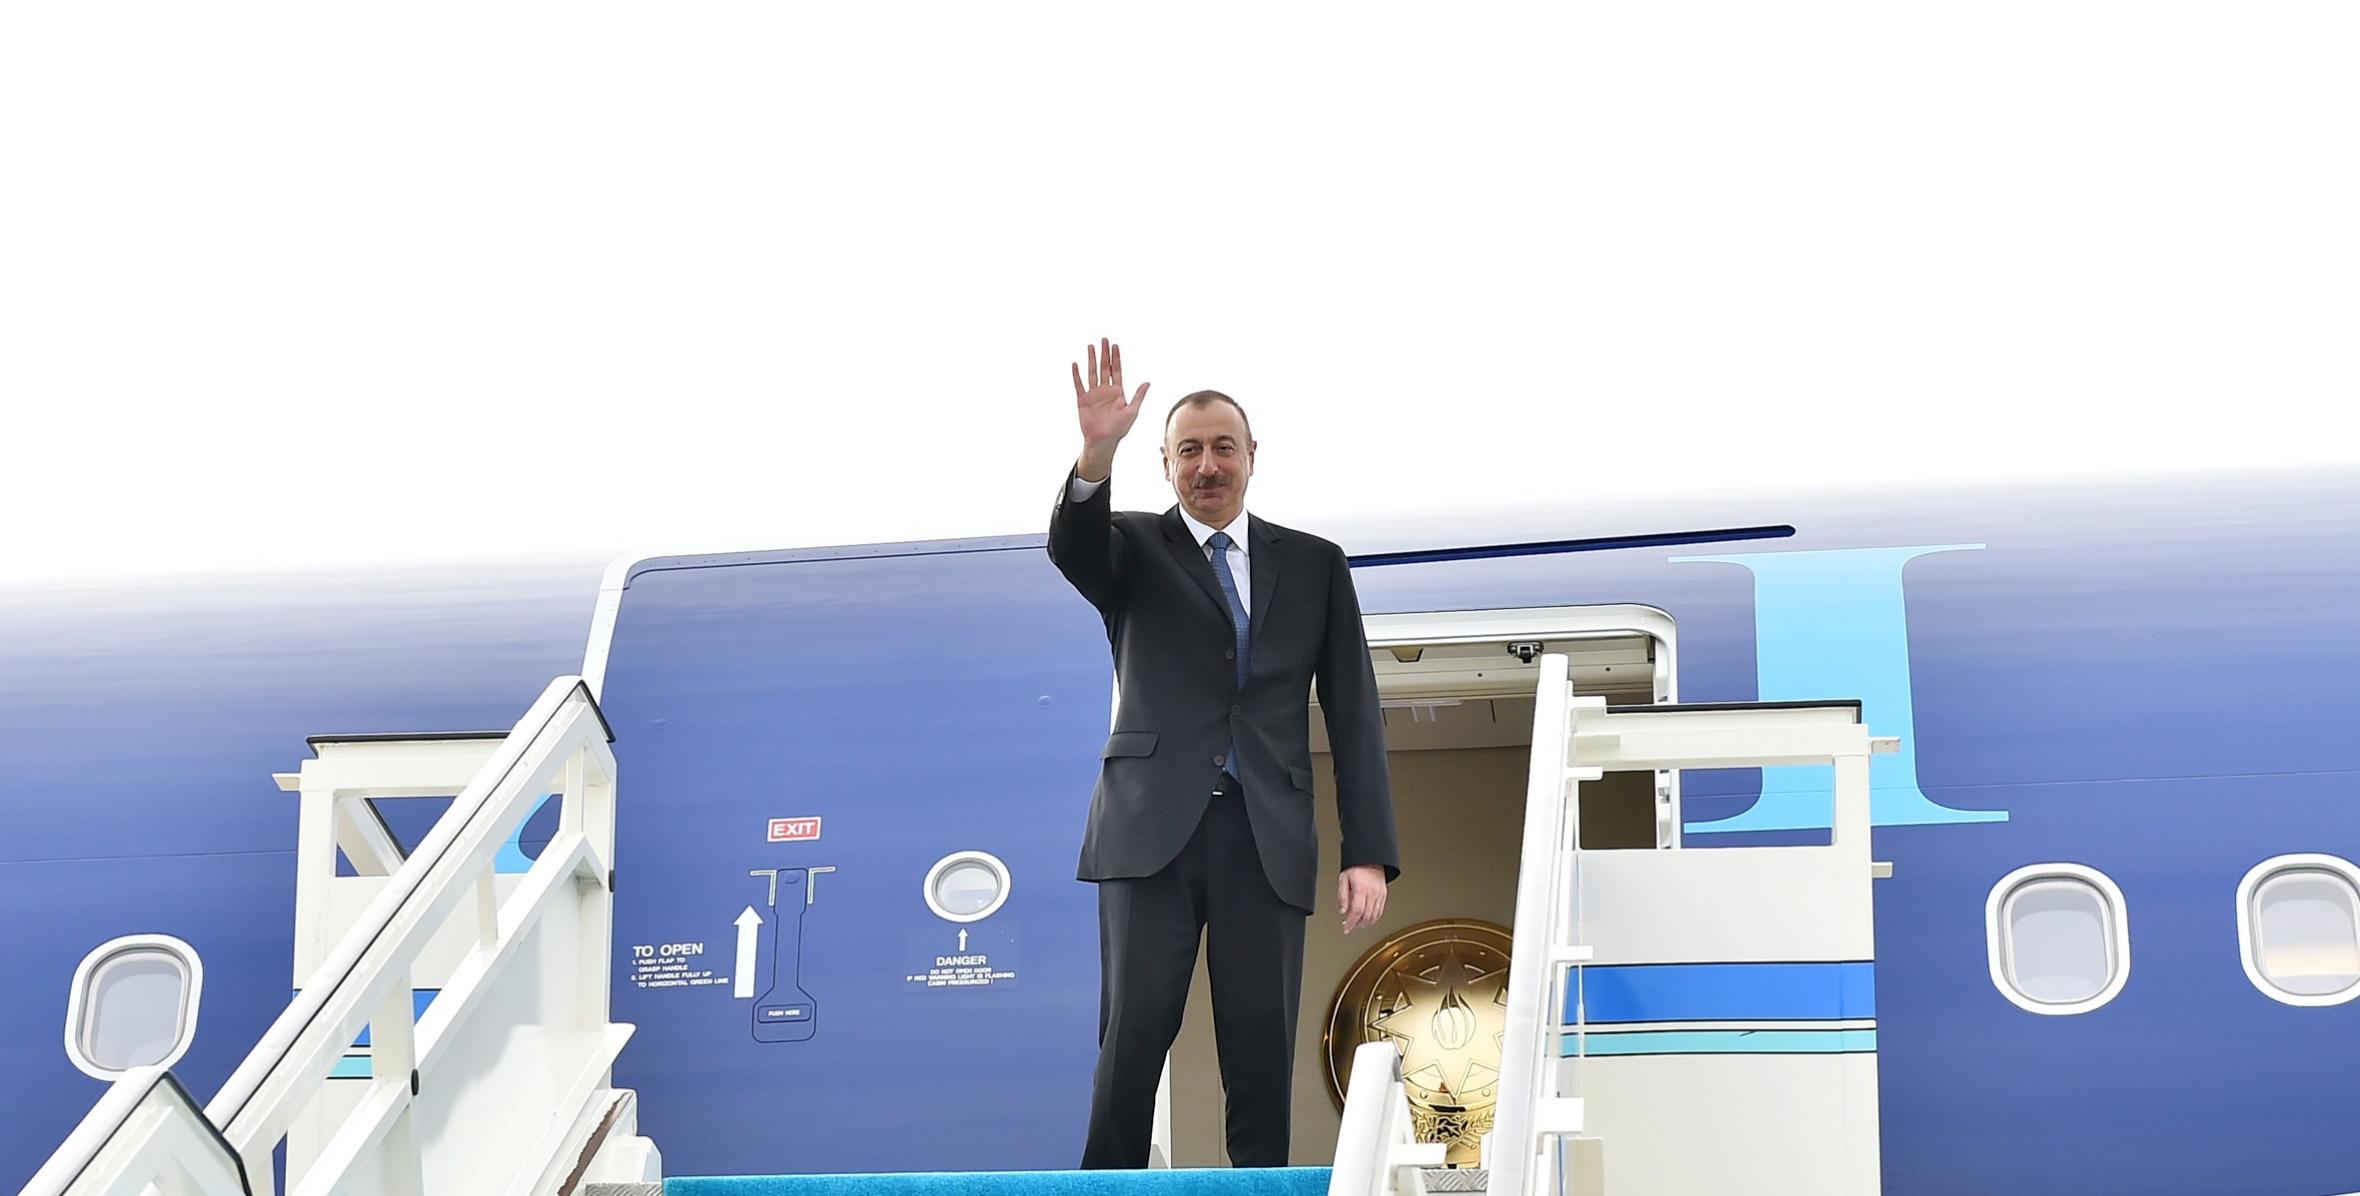 Завершился рабочий визит Президента Азербайджана Ильхама Алиева в Турцию